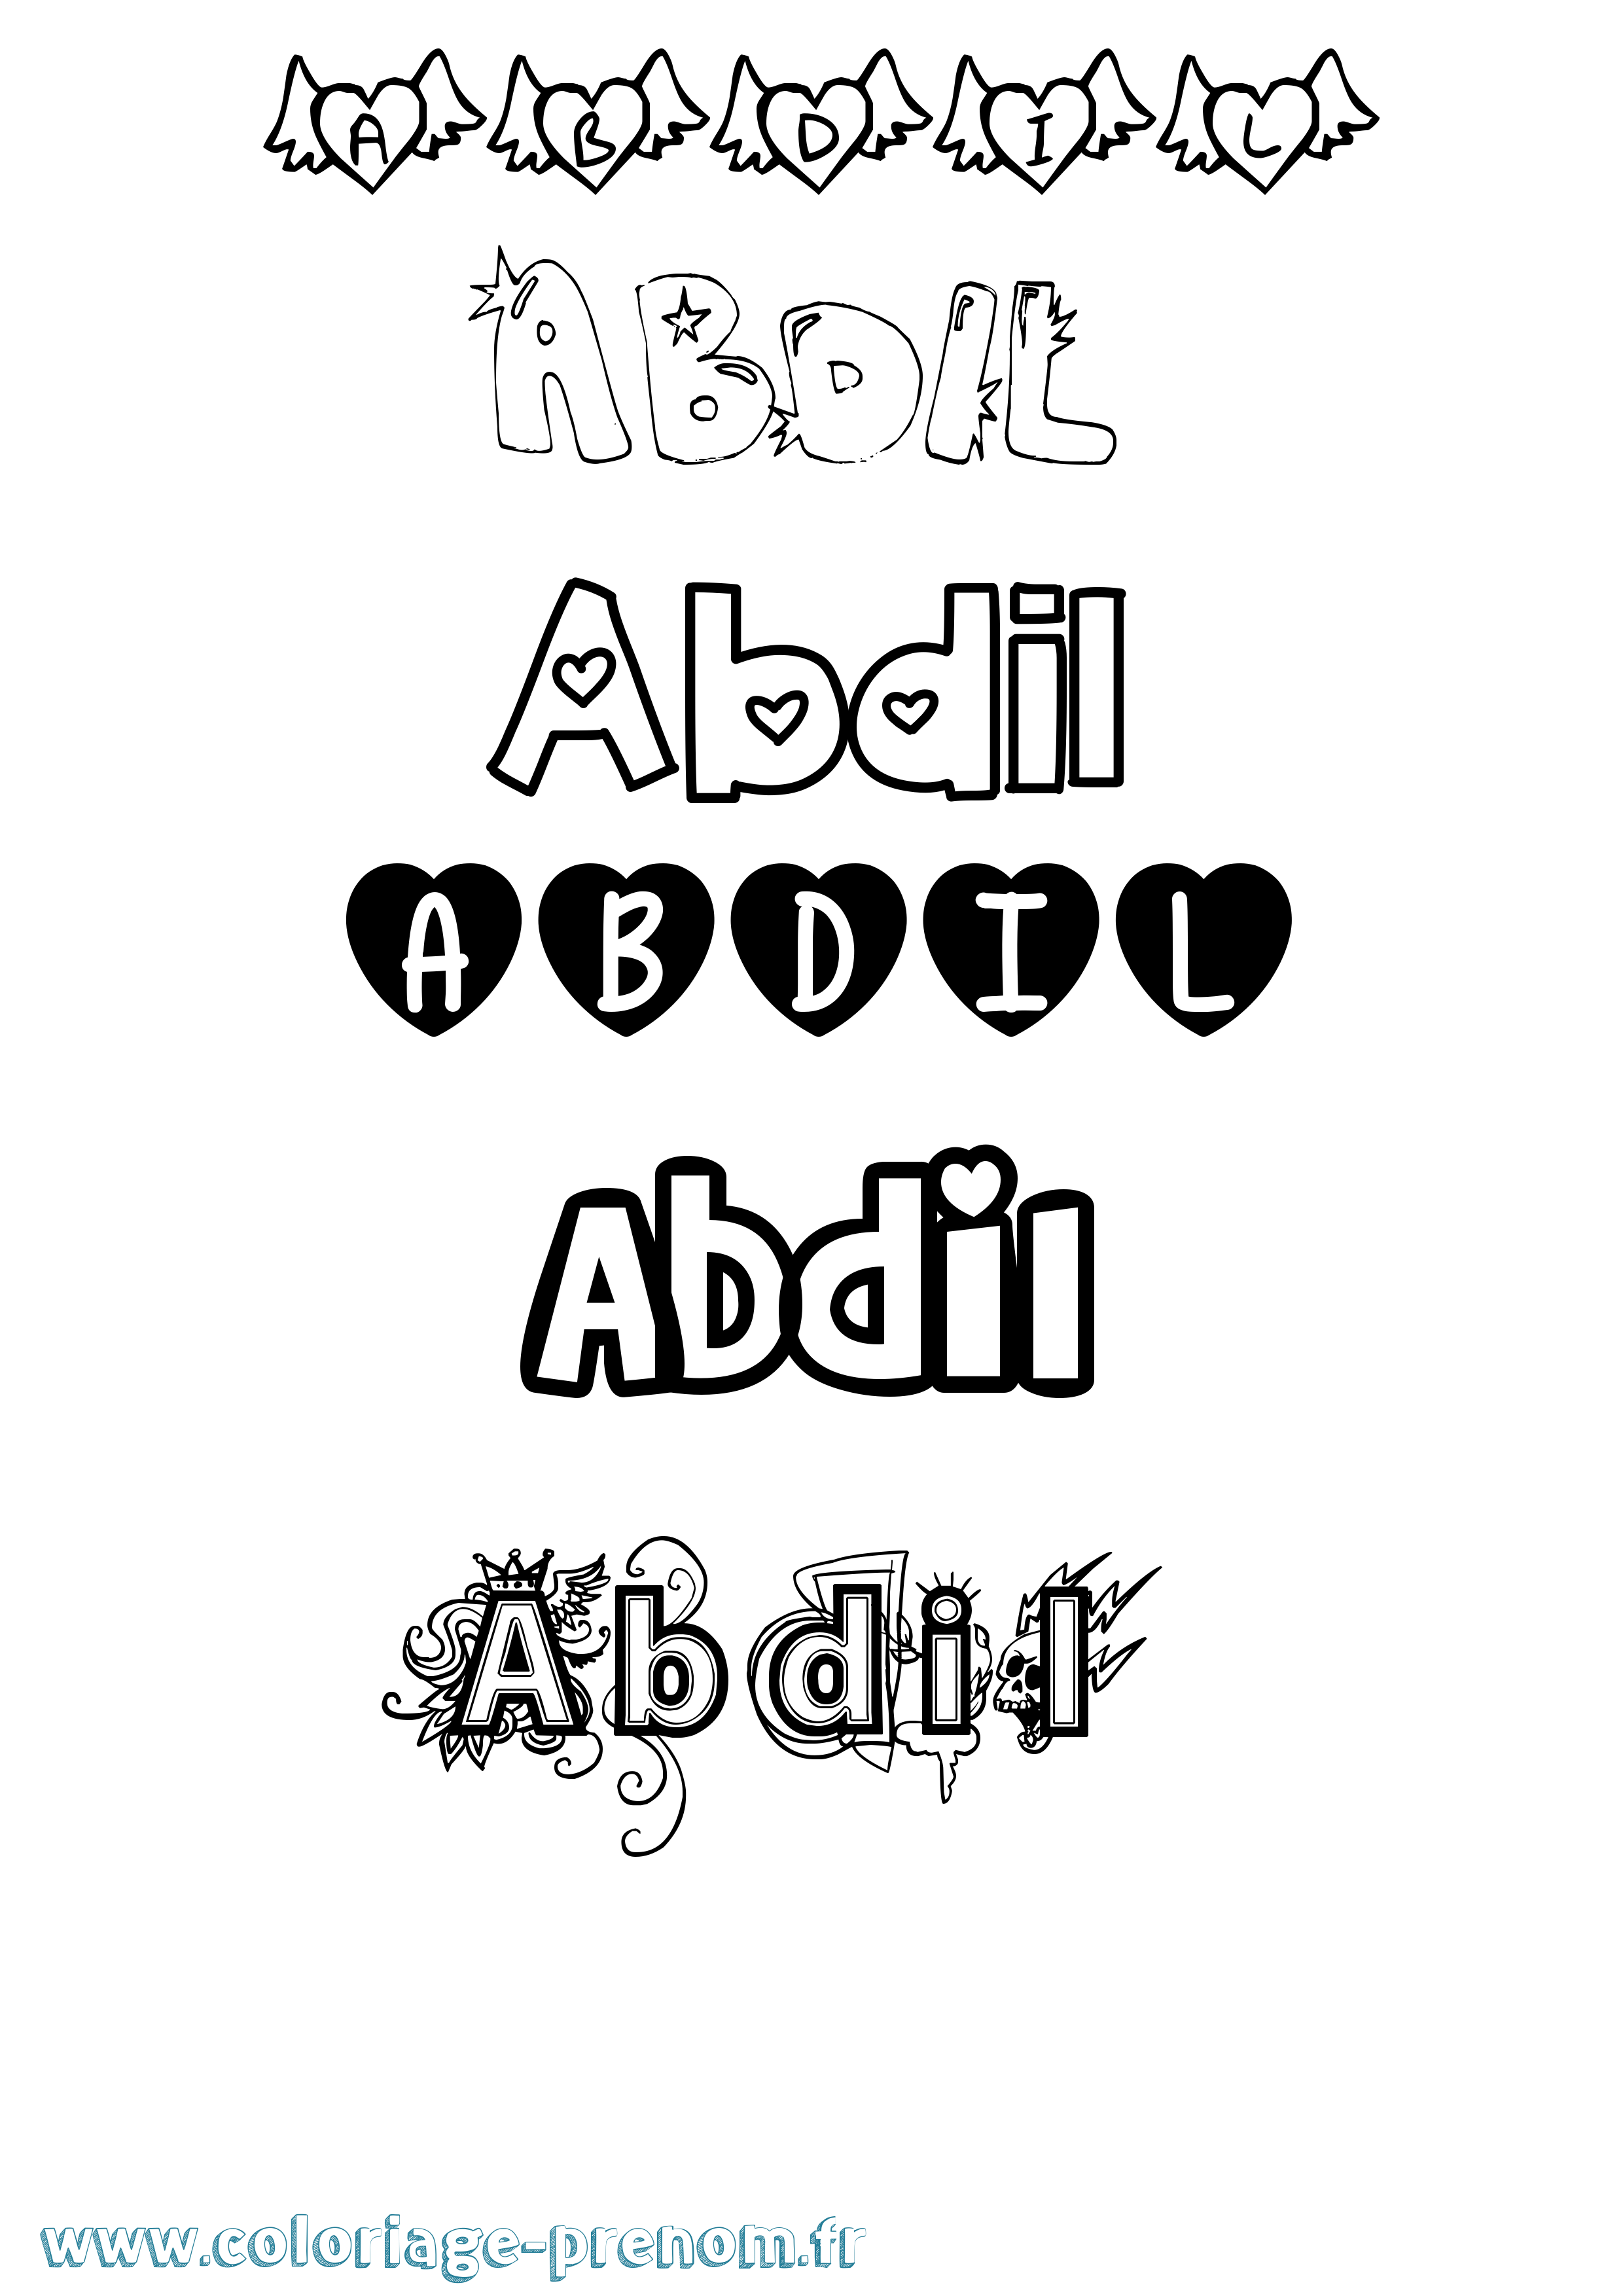 Coloriage prénom Abdil Girly